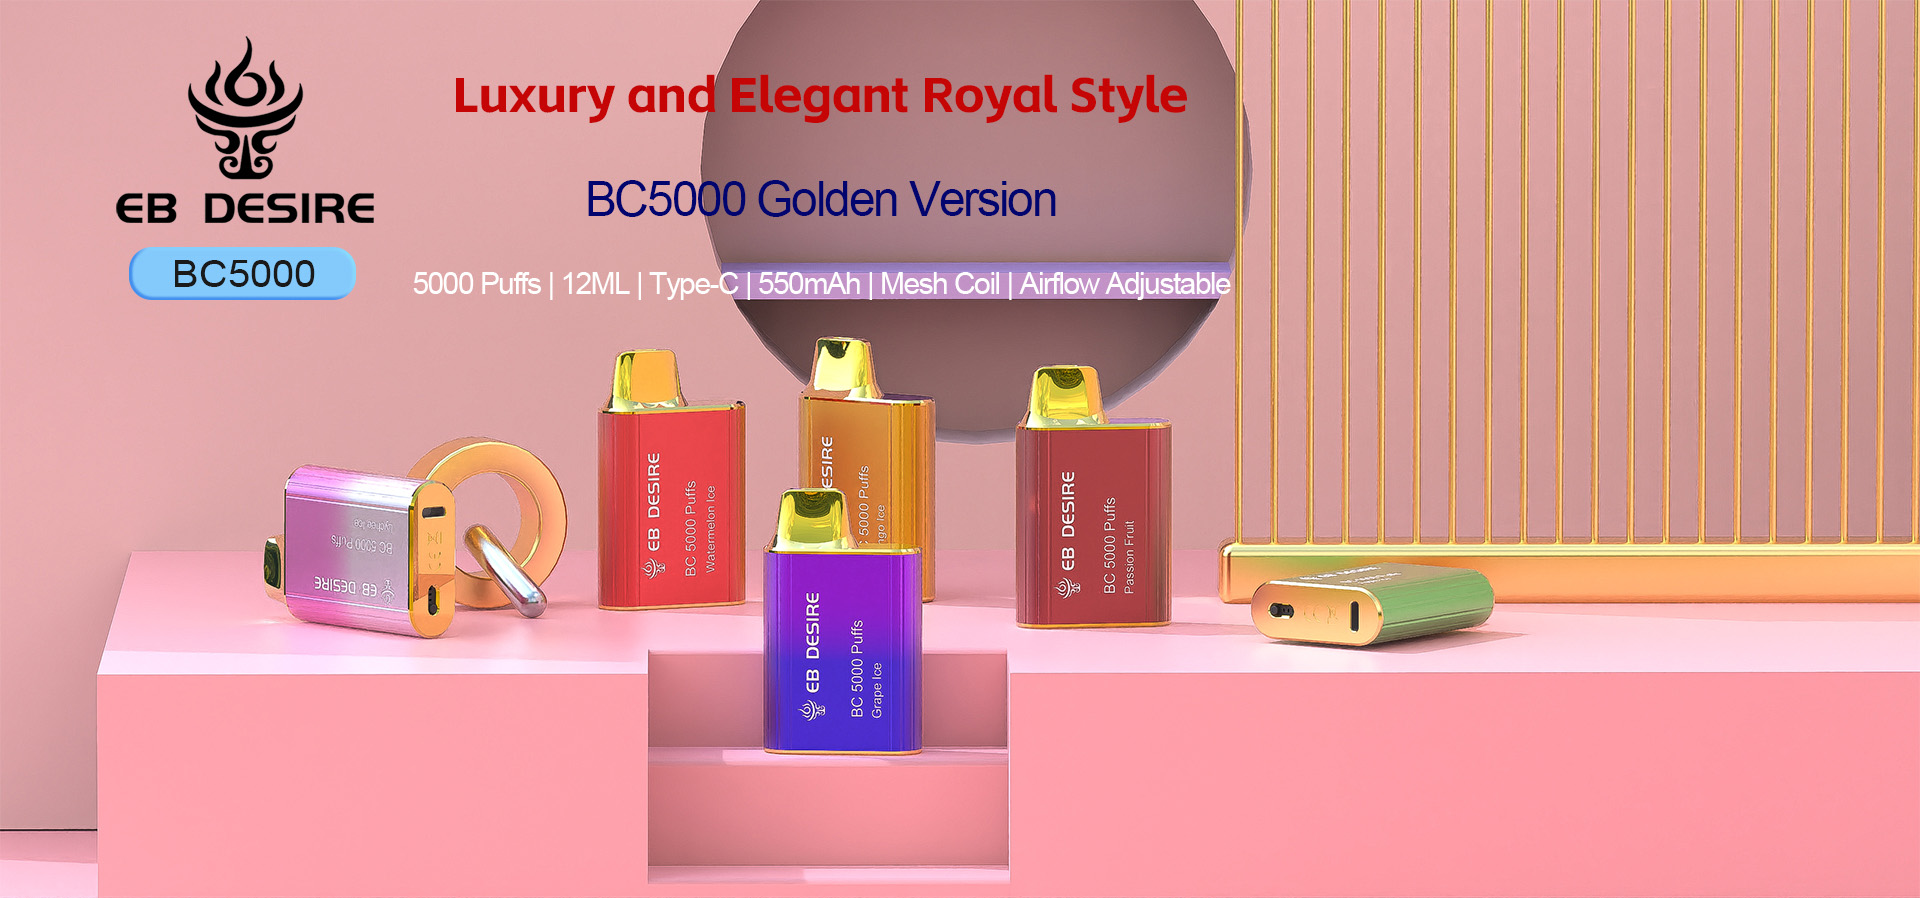 ویپ یکبار مصرف طلایی لوکس و زیبا EB DESIRE BC5000 (1)